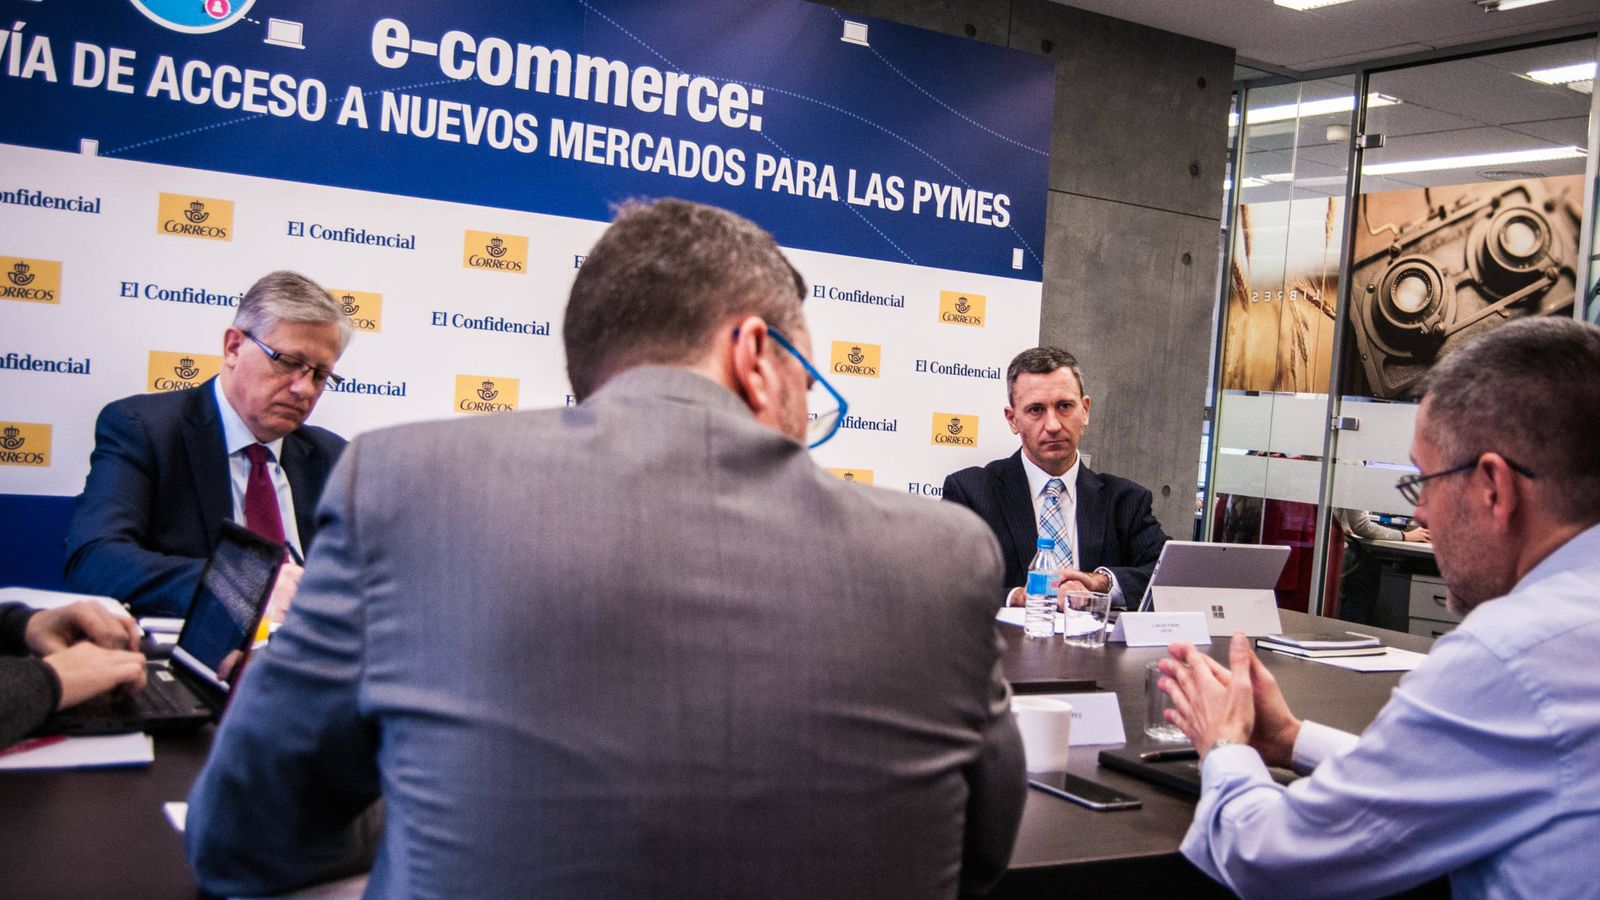 Foto: Un momento de la mesa redonda "E-commerce': vía de acceso a nuevos mercados para las pymes", organizada por El Confidencial y Correos.